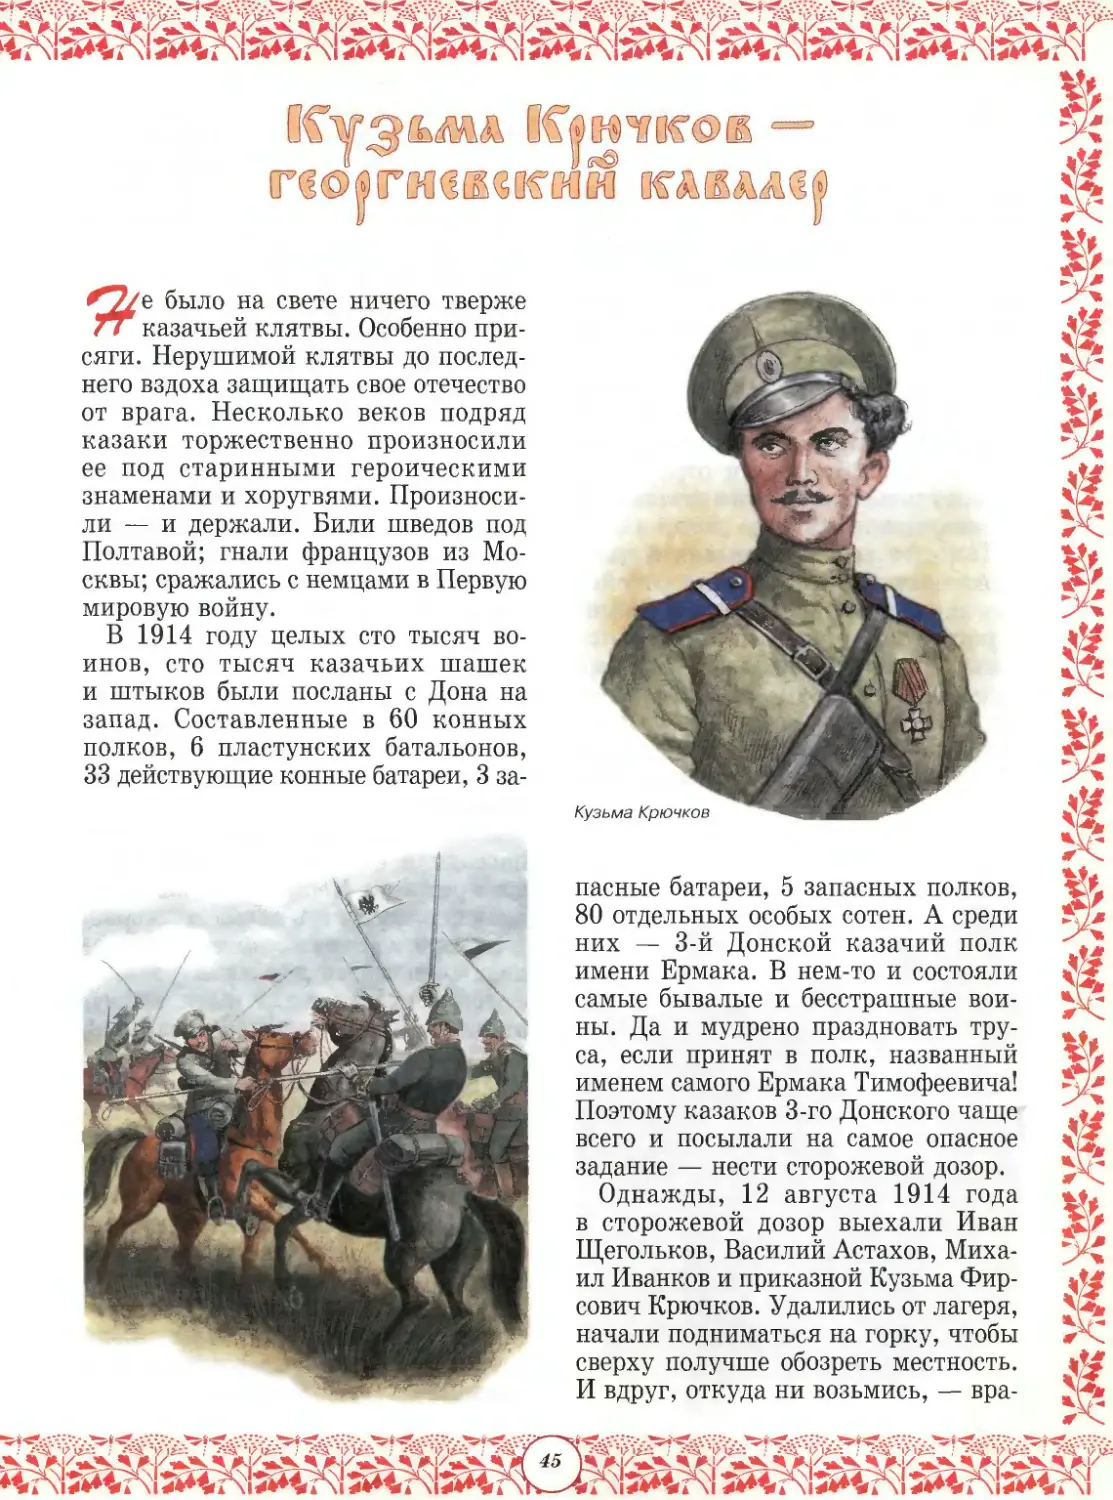 Кузьма Крючков — георгиевский кавалер